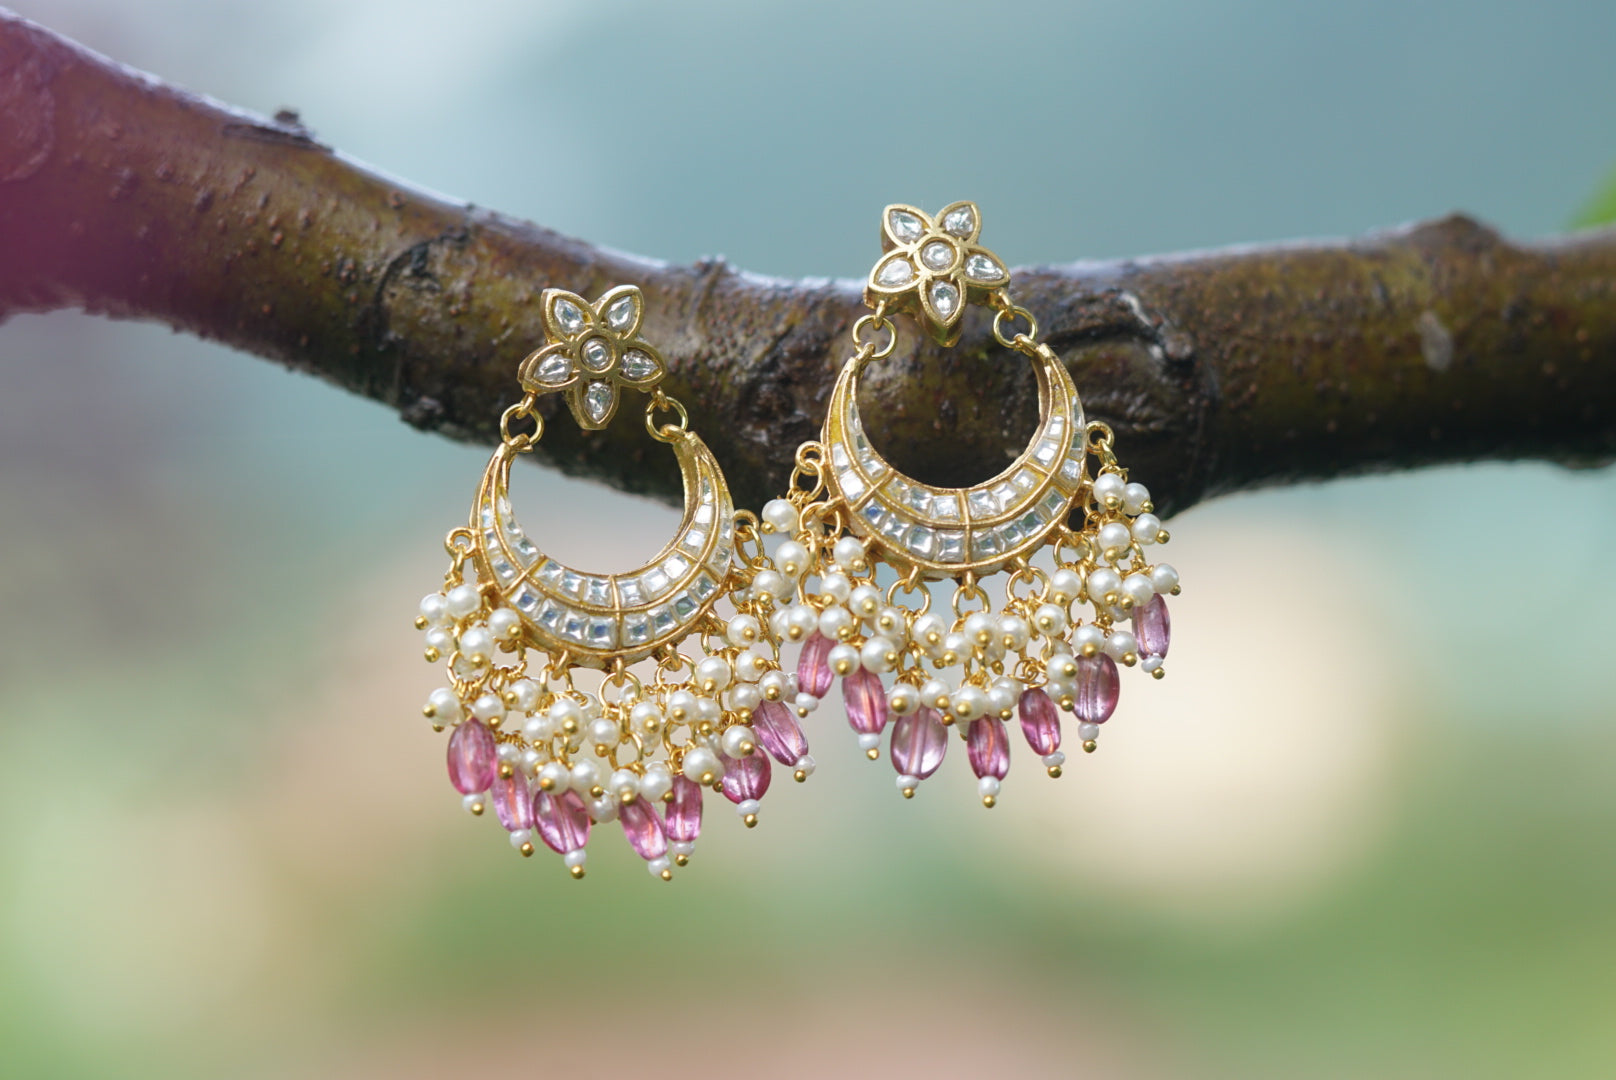 Nirozi - Chand bali earrings